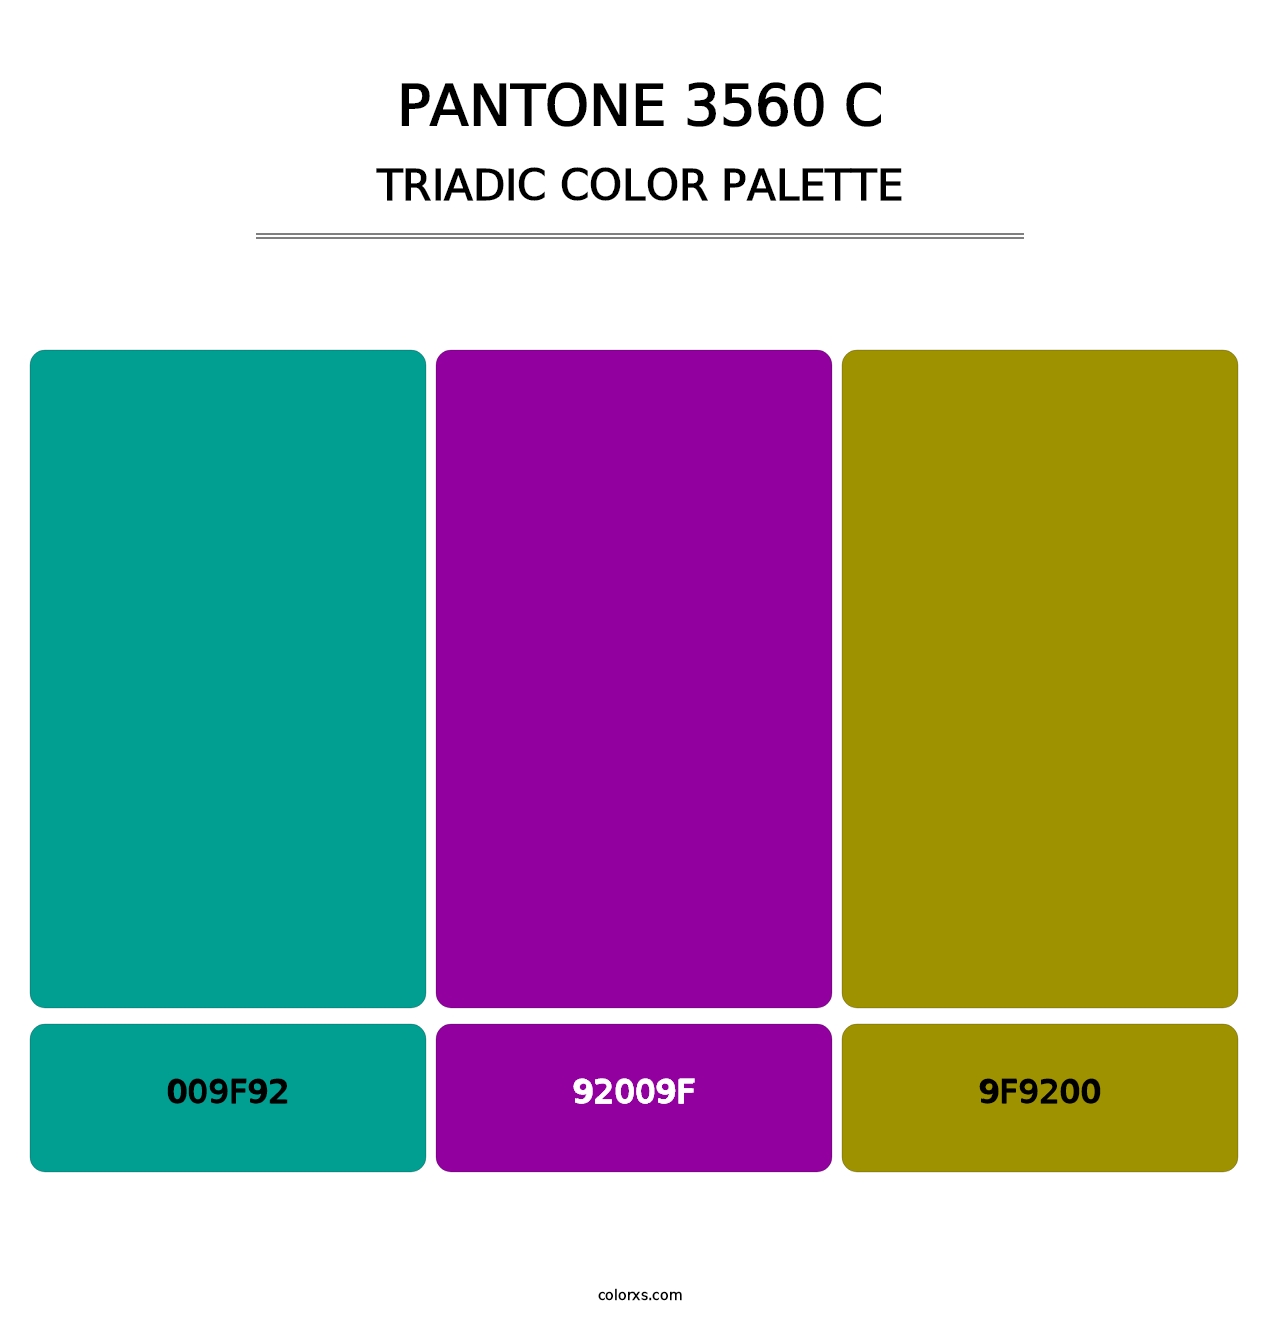 PANTONE 3560 C - Triadic Color Palette